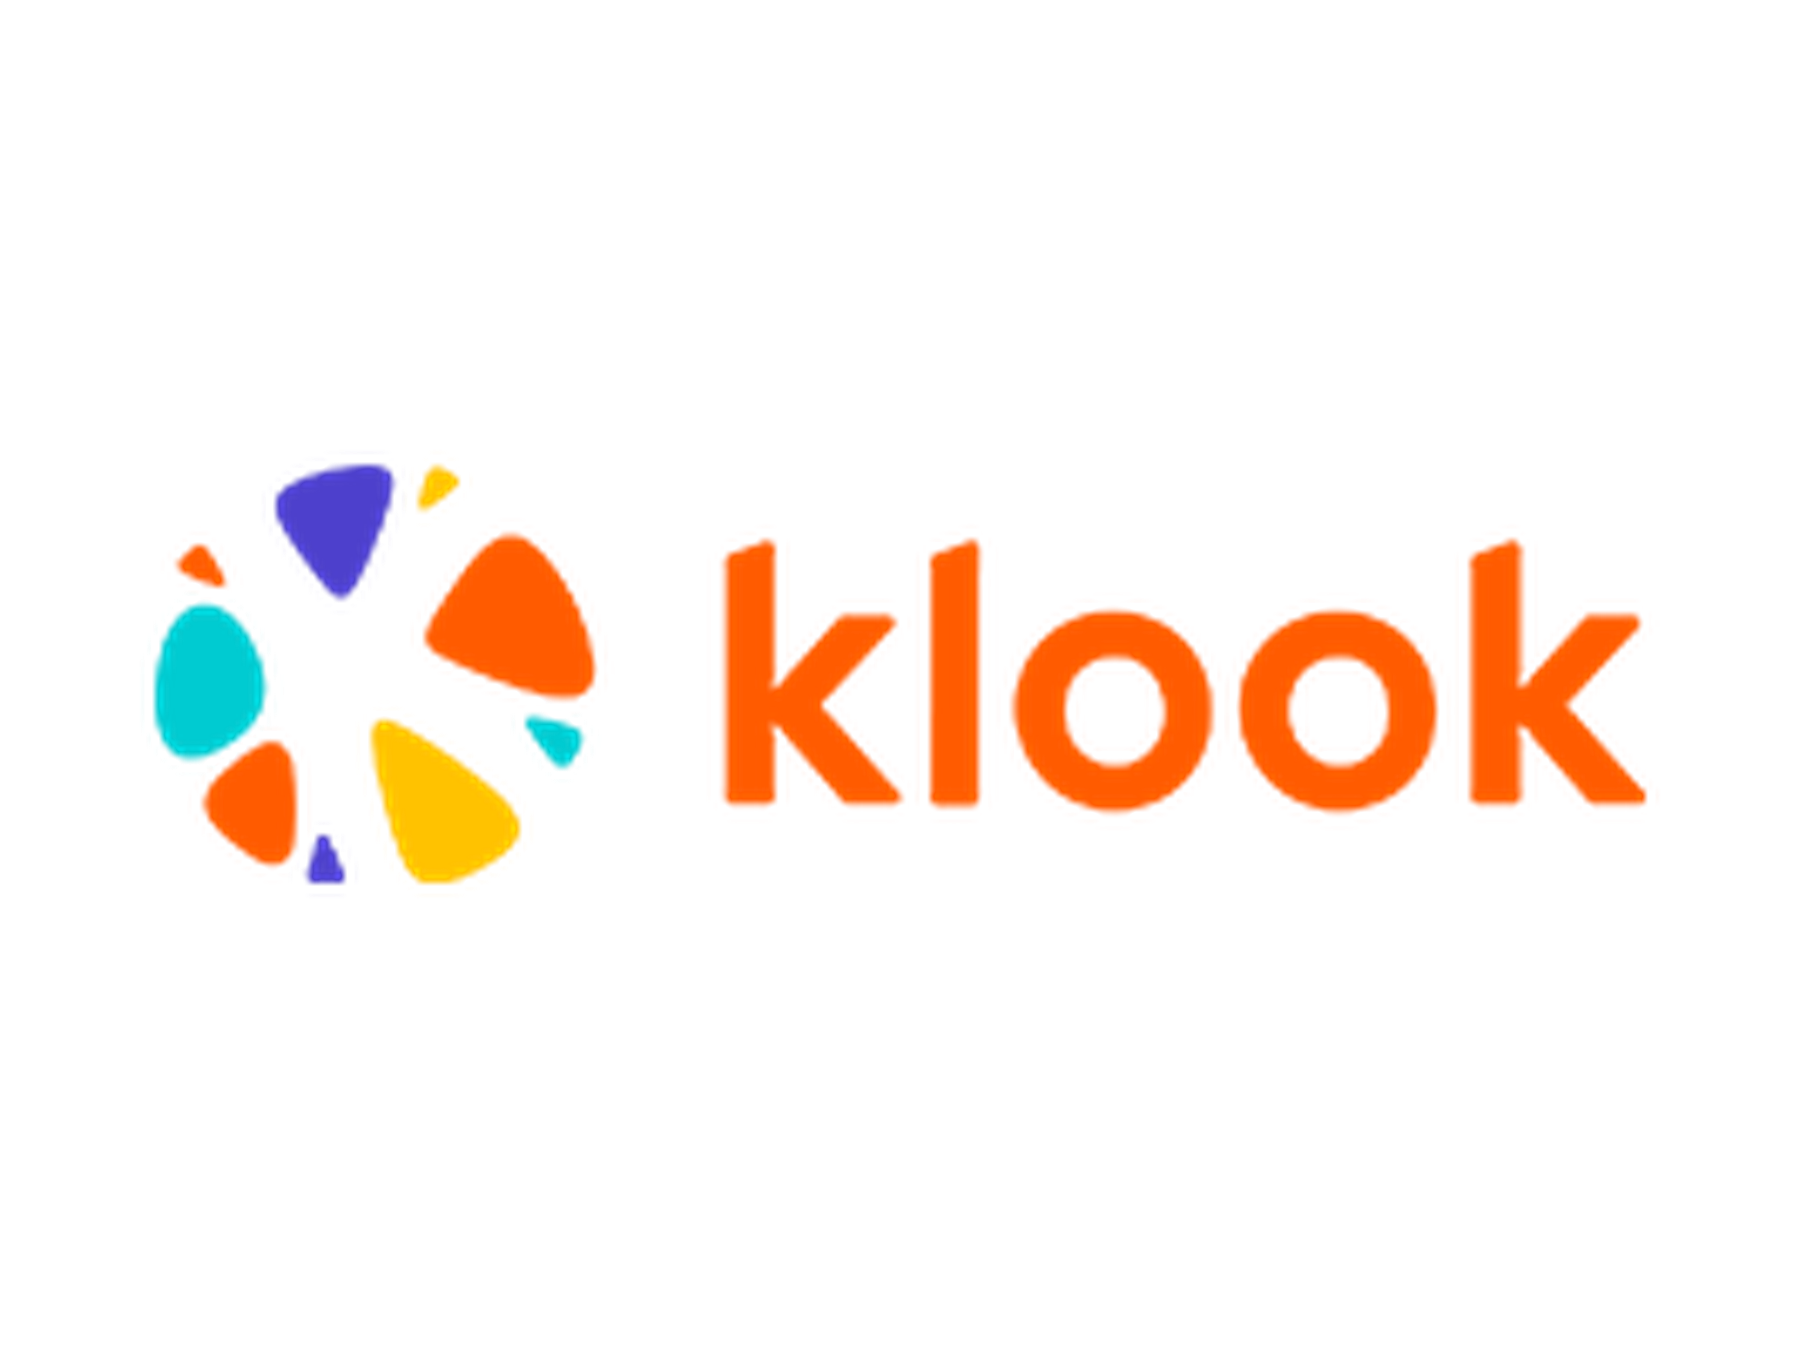 Klook Promo Code